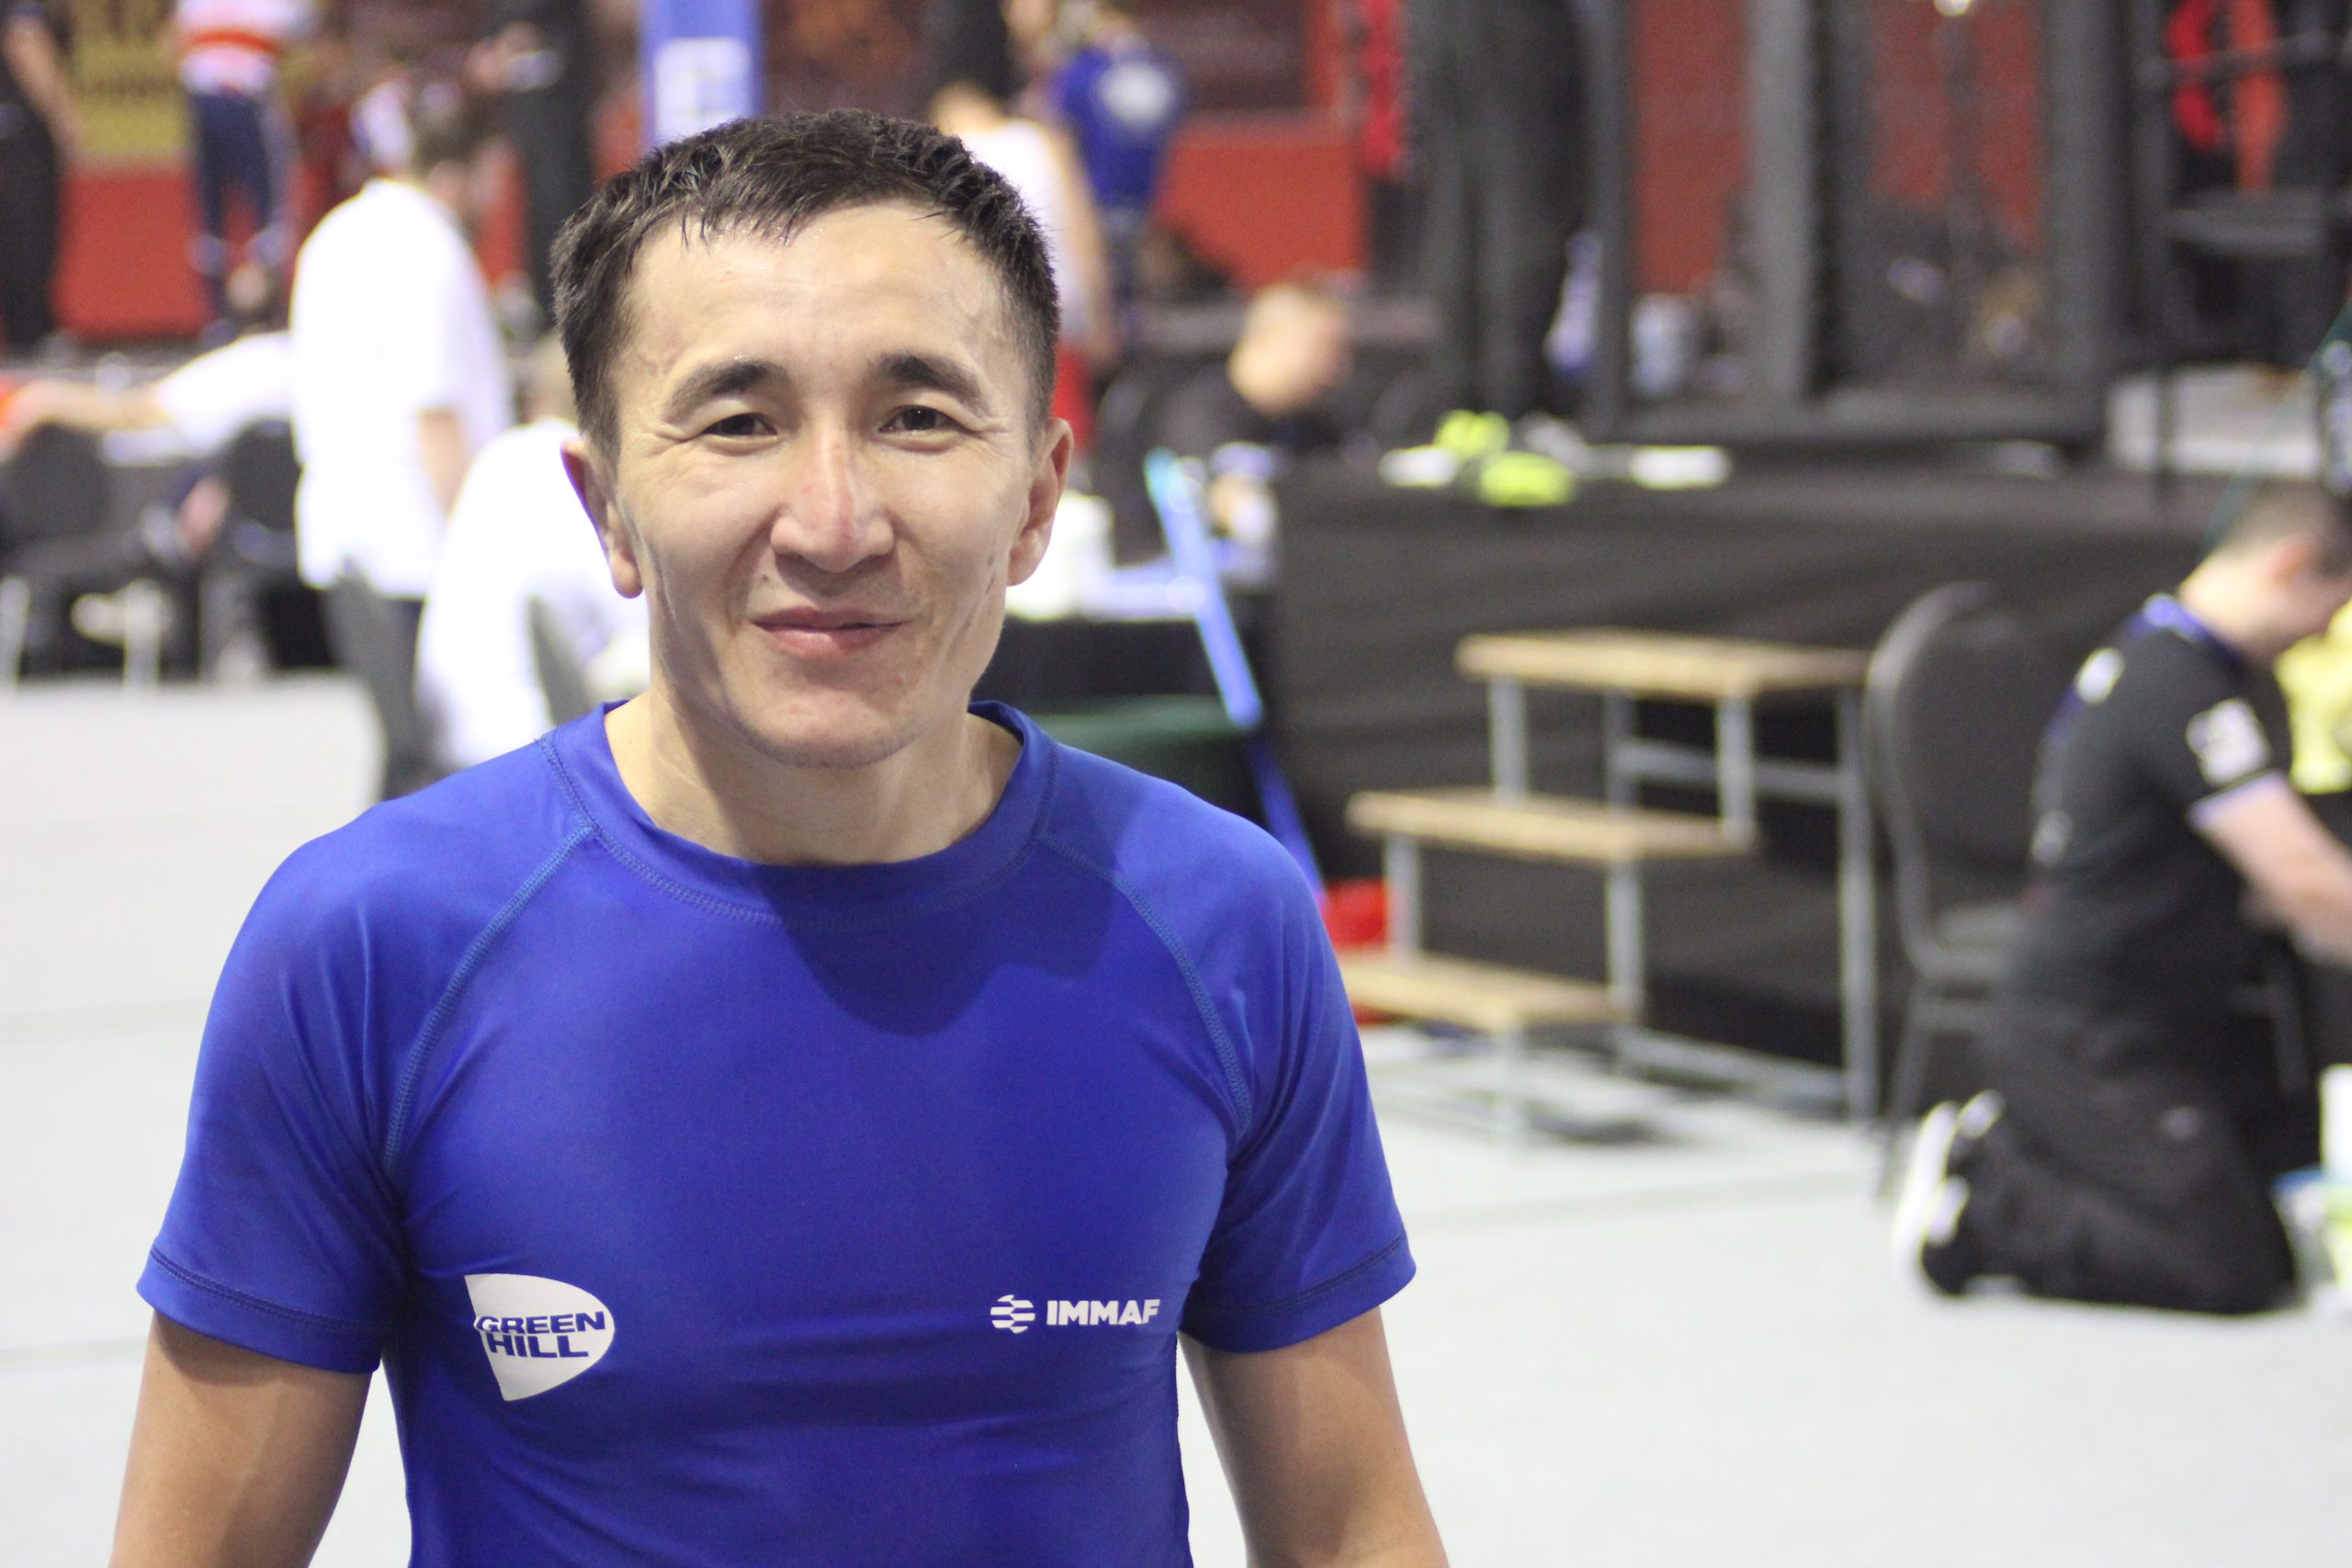 'People's Champion' Berik Shinaliyev embodies the spirit of IMMAF